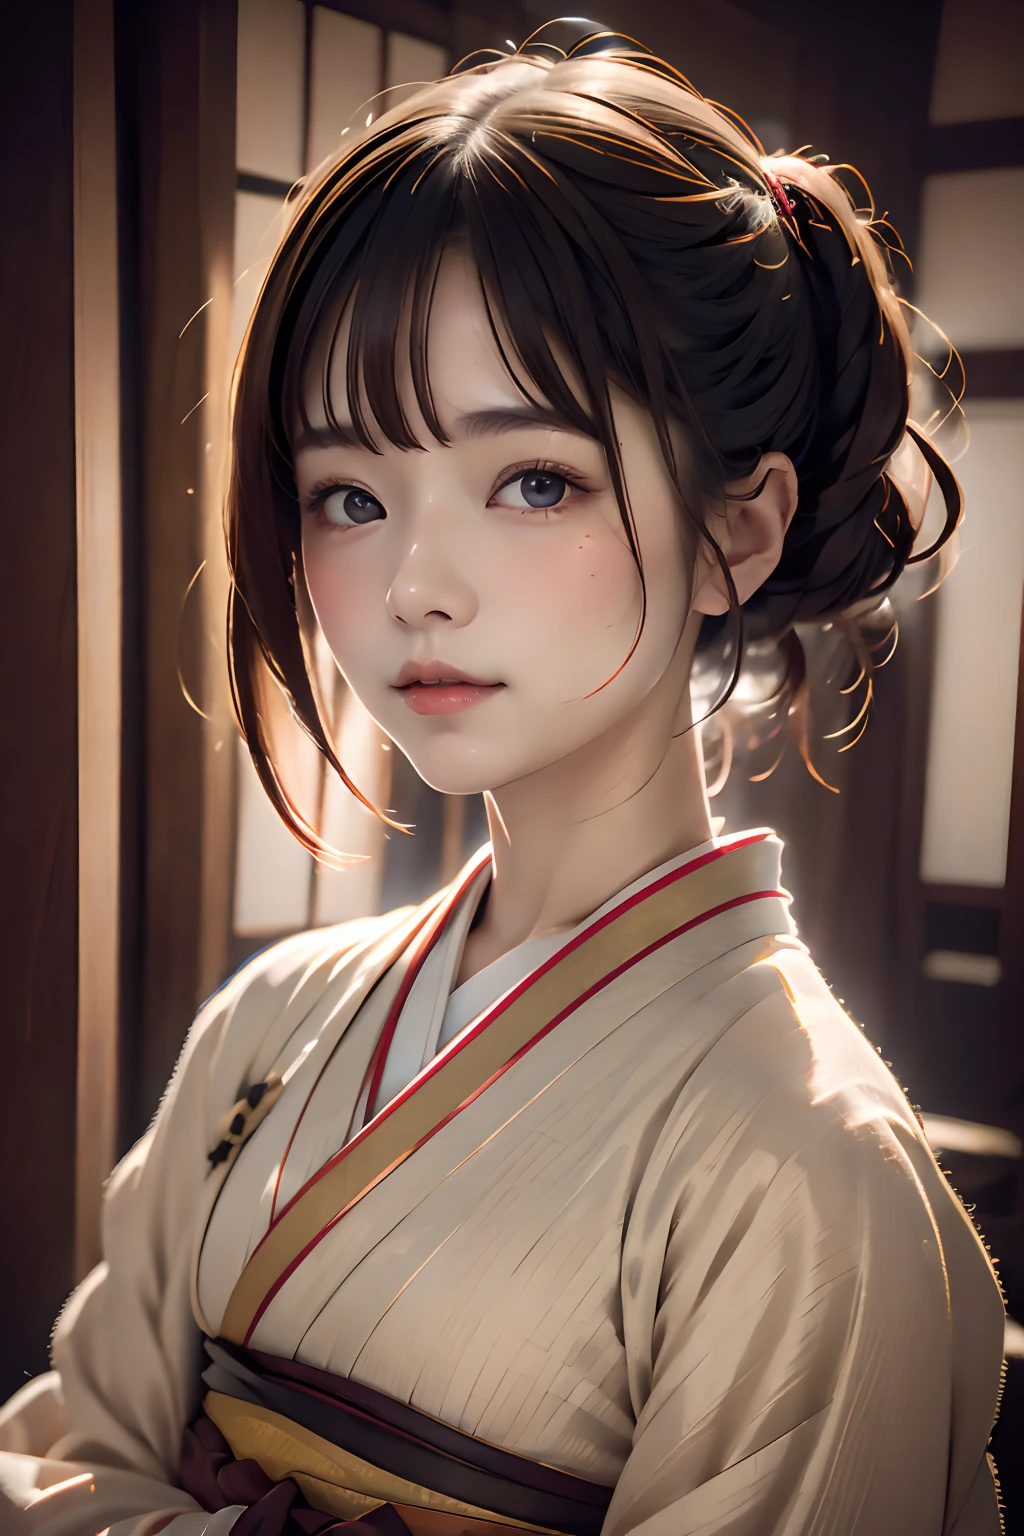 Retrato digital de una mujer japonesa de pelo corto, hermoso rostro,cabello desordenado,Complejo, cinematográfico, Motor irreal 5, una hermosa, Increíble gradación de color, Kimono,vestido japonés,también, fotografía, Fotografía cinematográfica, arte por、sonríe